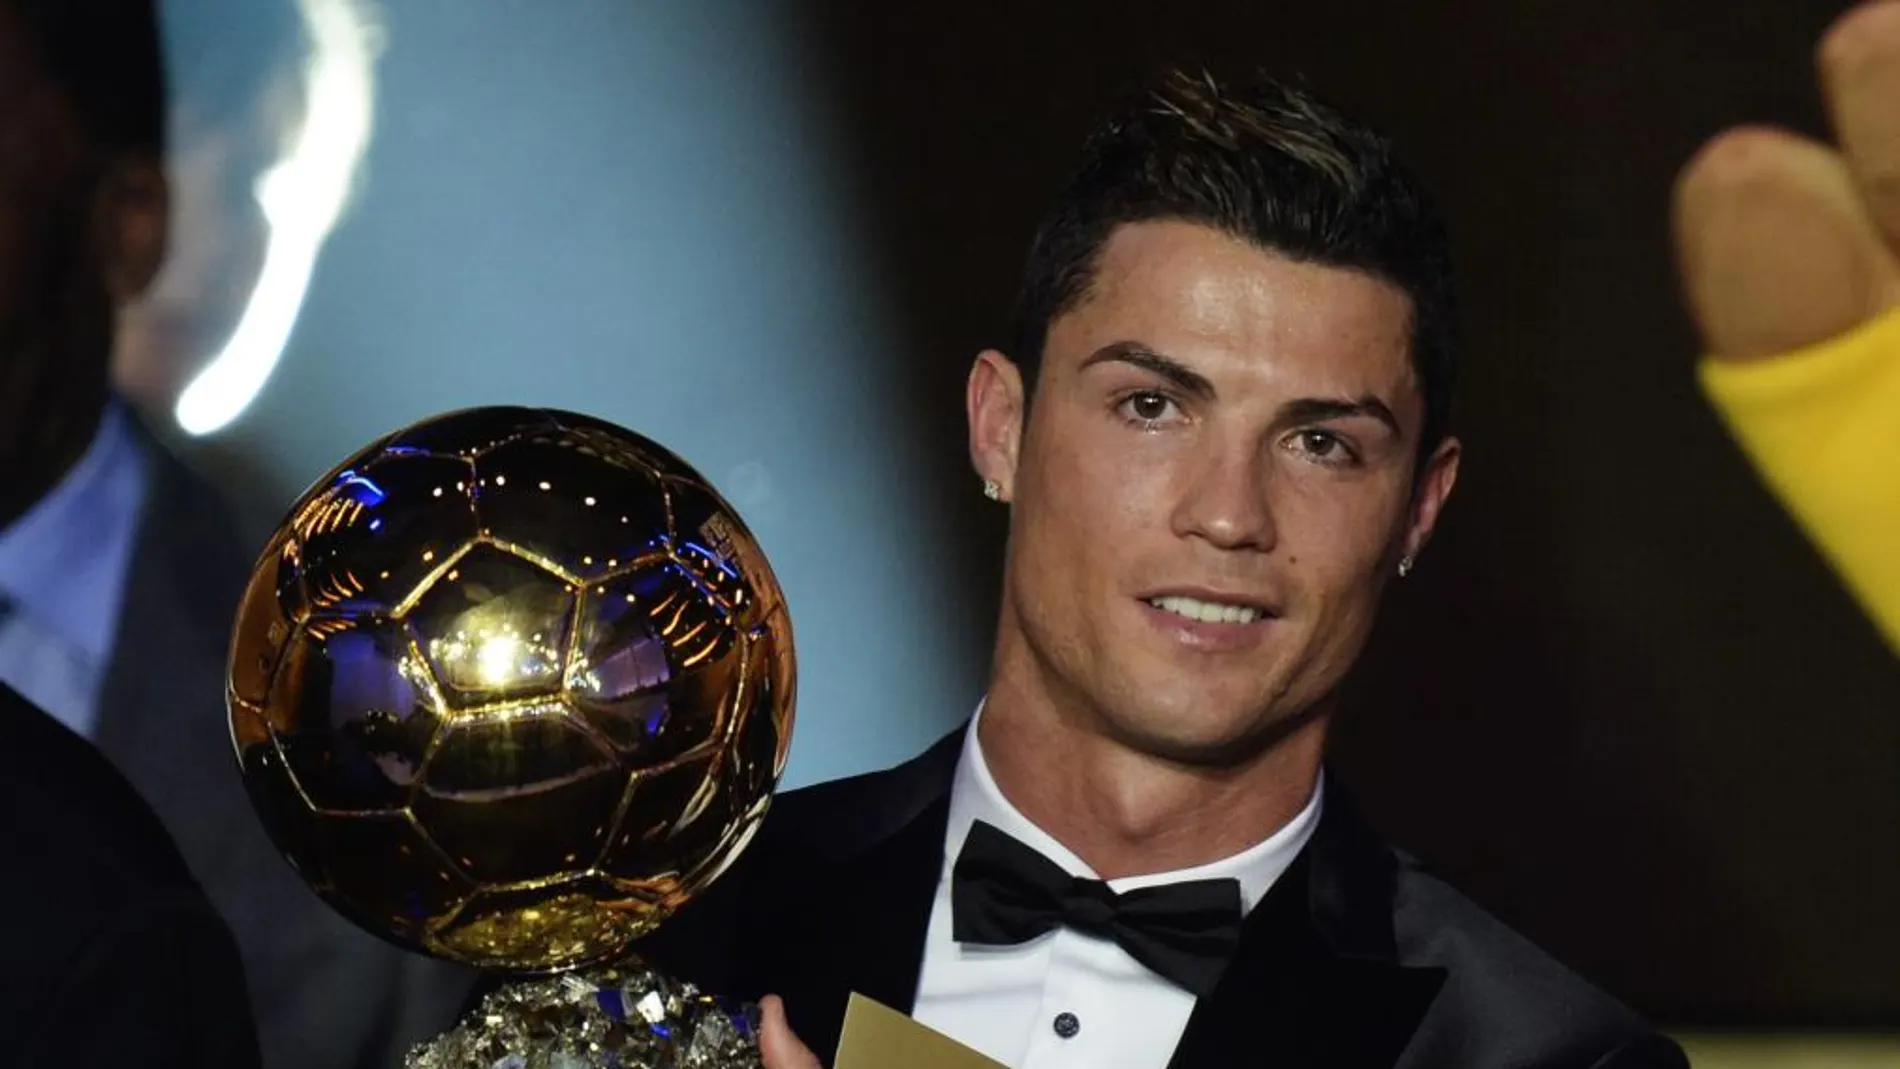 El portugués Cristiano Ronaldo (Real Madrid) posa con el Balón de Oro 2013